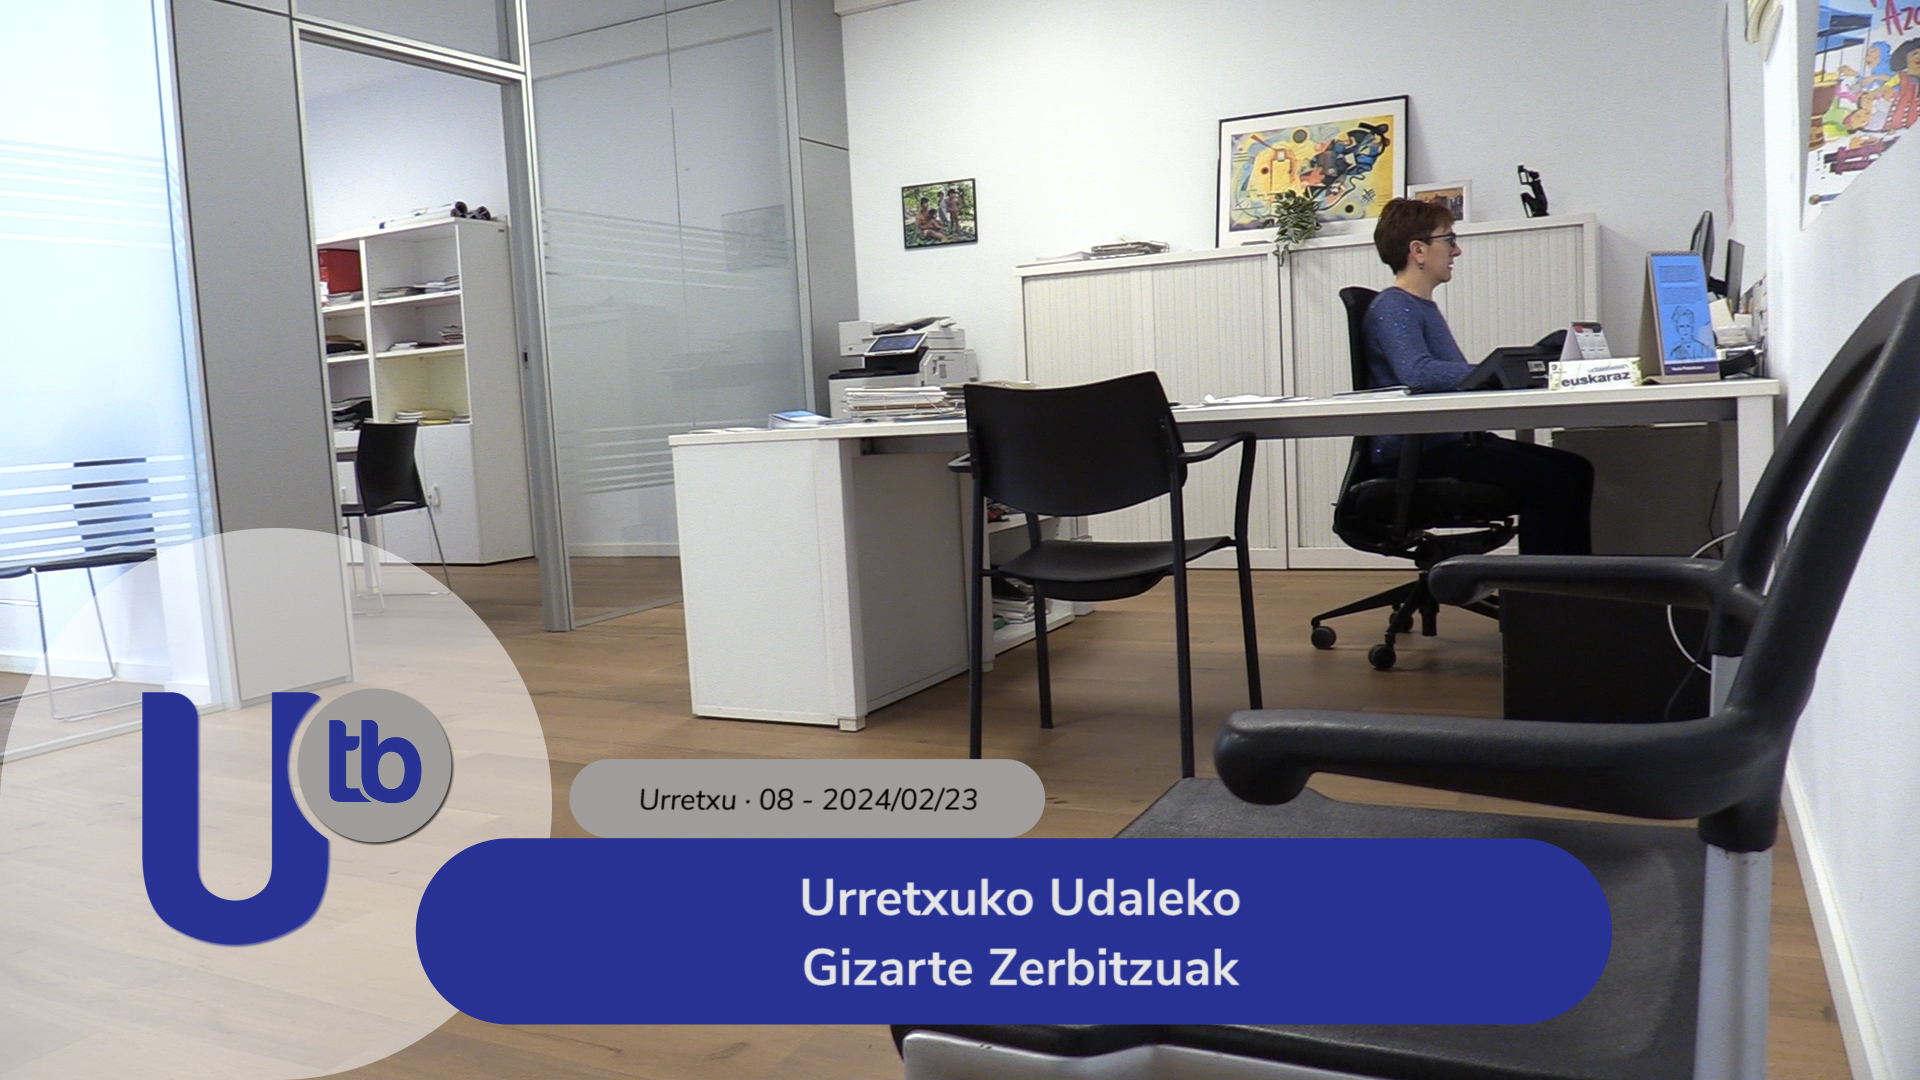 Servicios Sociales en el ayuntamiento de Urretxu / Urretxuko Udaleko Gizarte Zerbitzuak